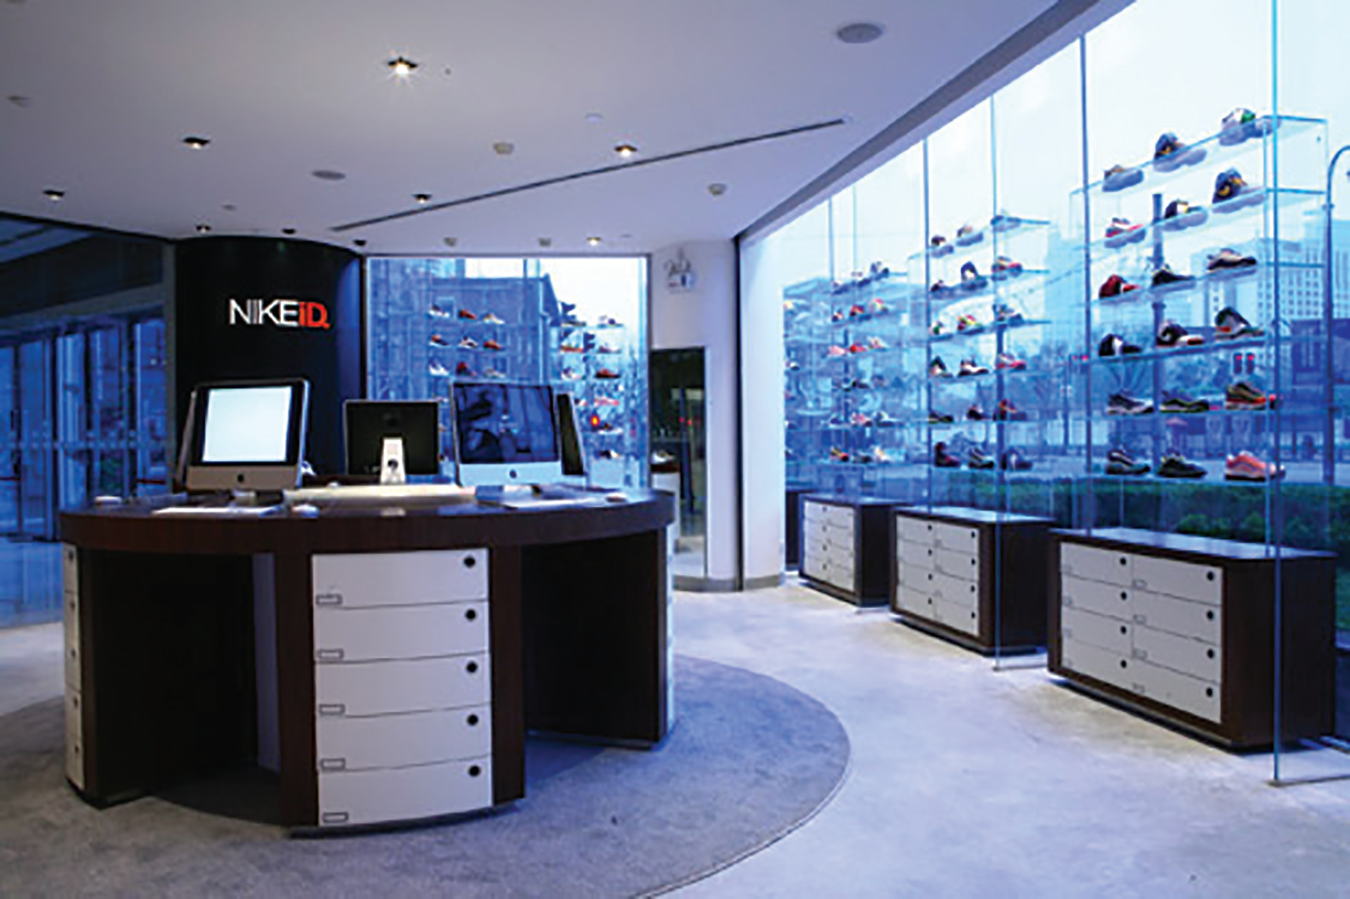 Une photo de l'intérieur d'un magasin NikeID montrant des chaussures sur des étagères près de fenêtres vitrées avec vue sur de nombreux bâtiments de grande hauteur.